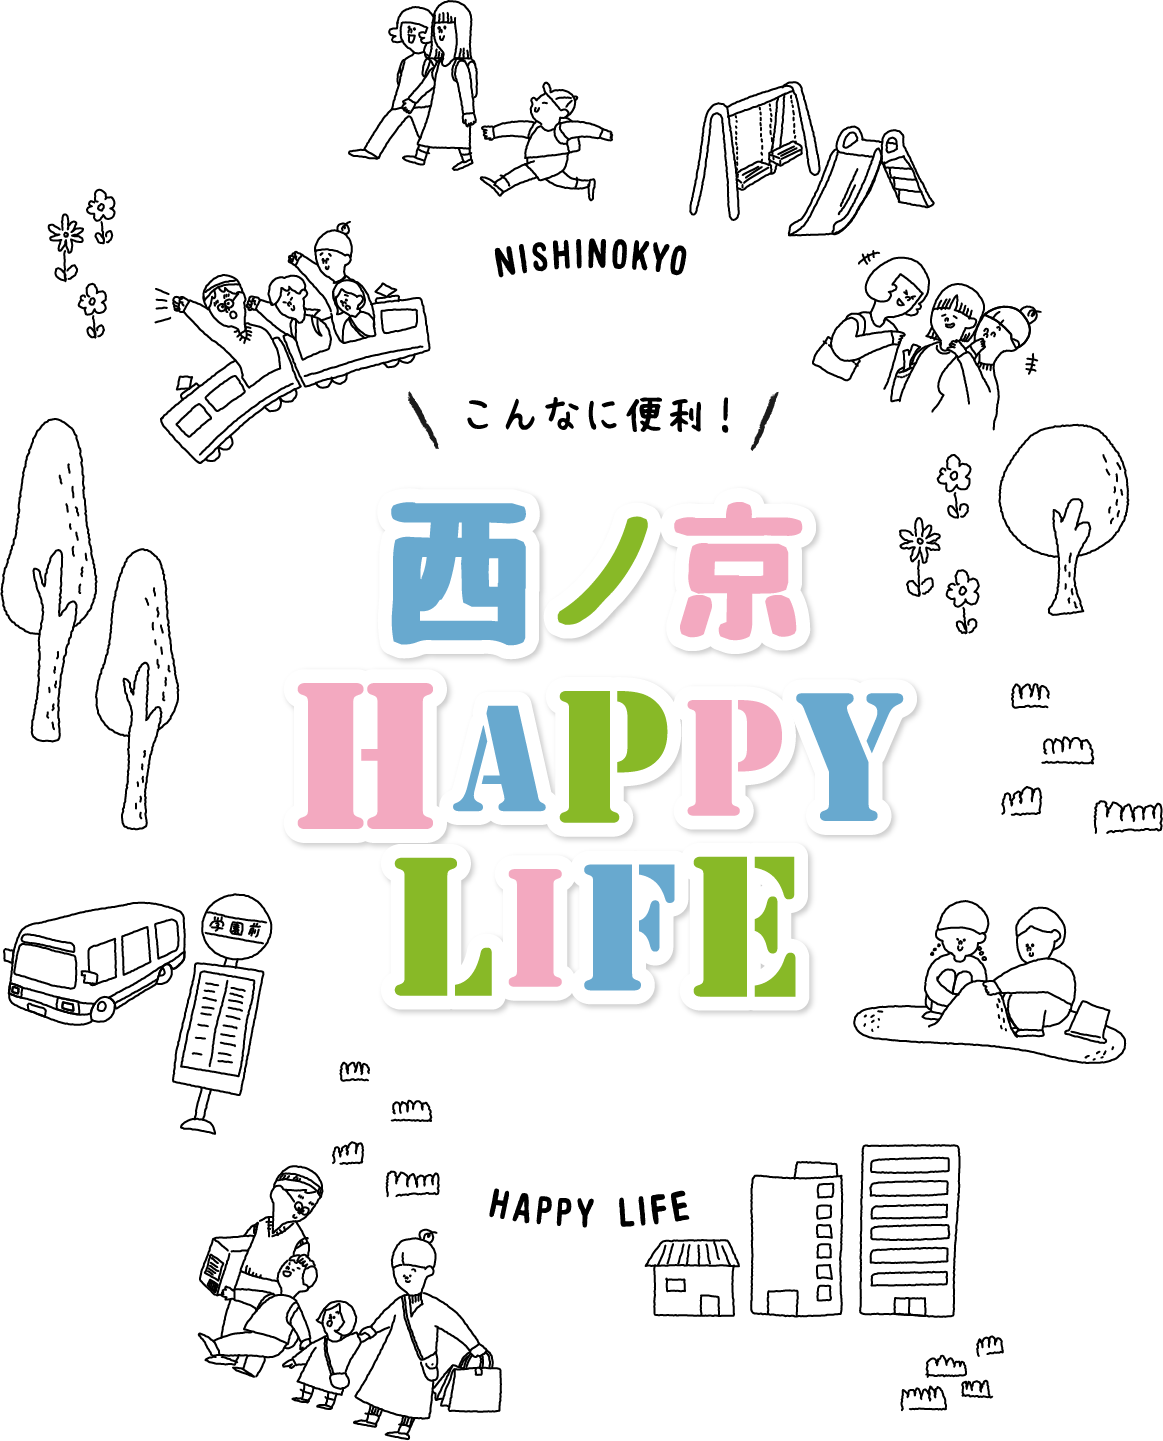 西ノ京 HAPPY LIFE